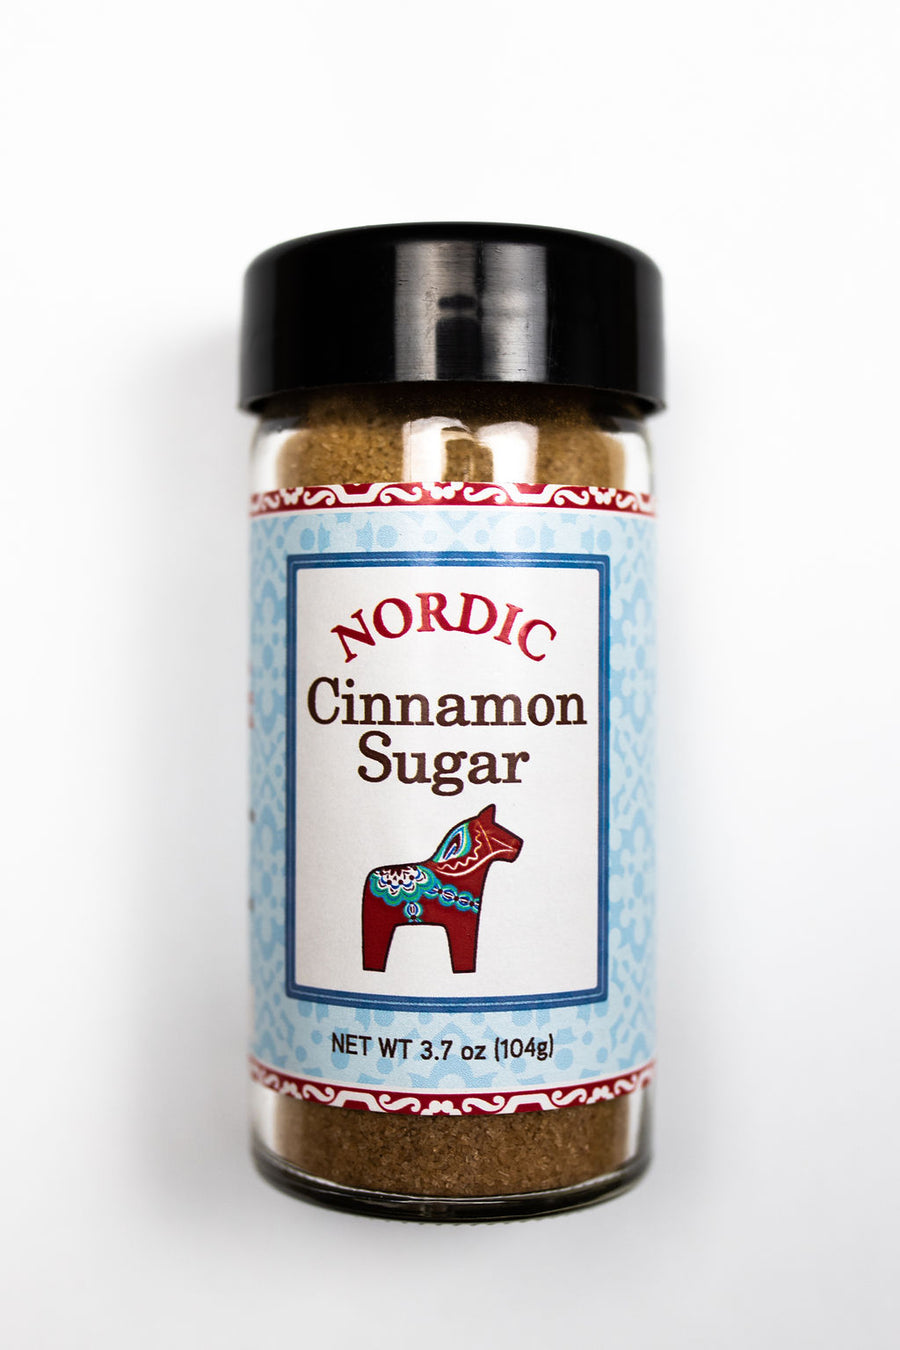 Nordic Cinnamon Sugar